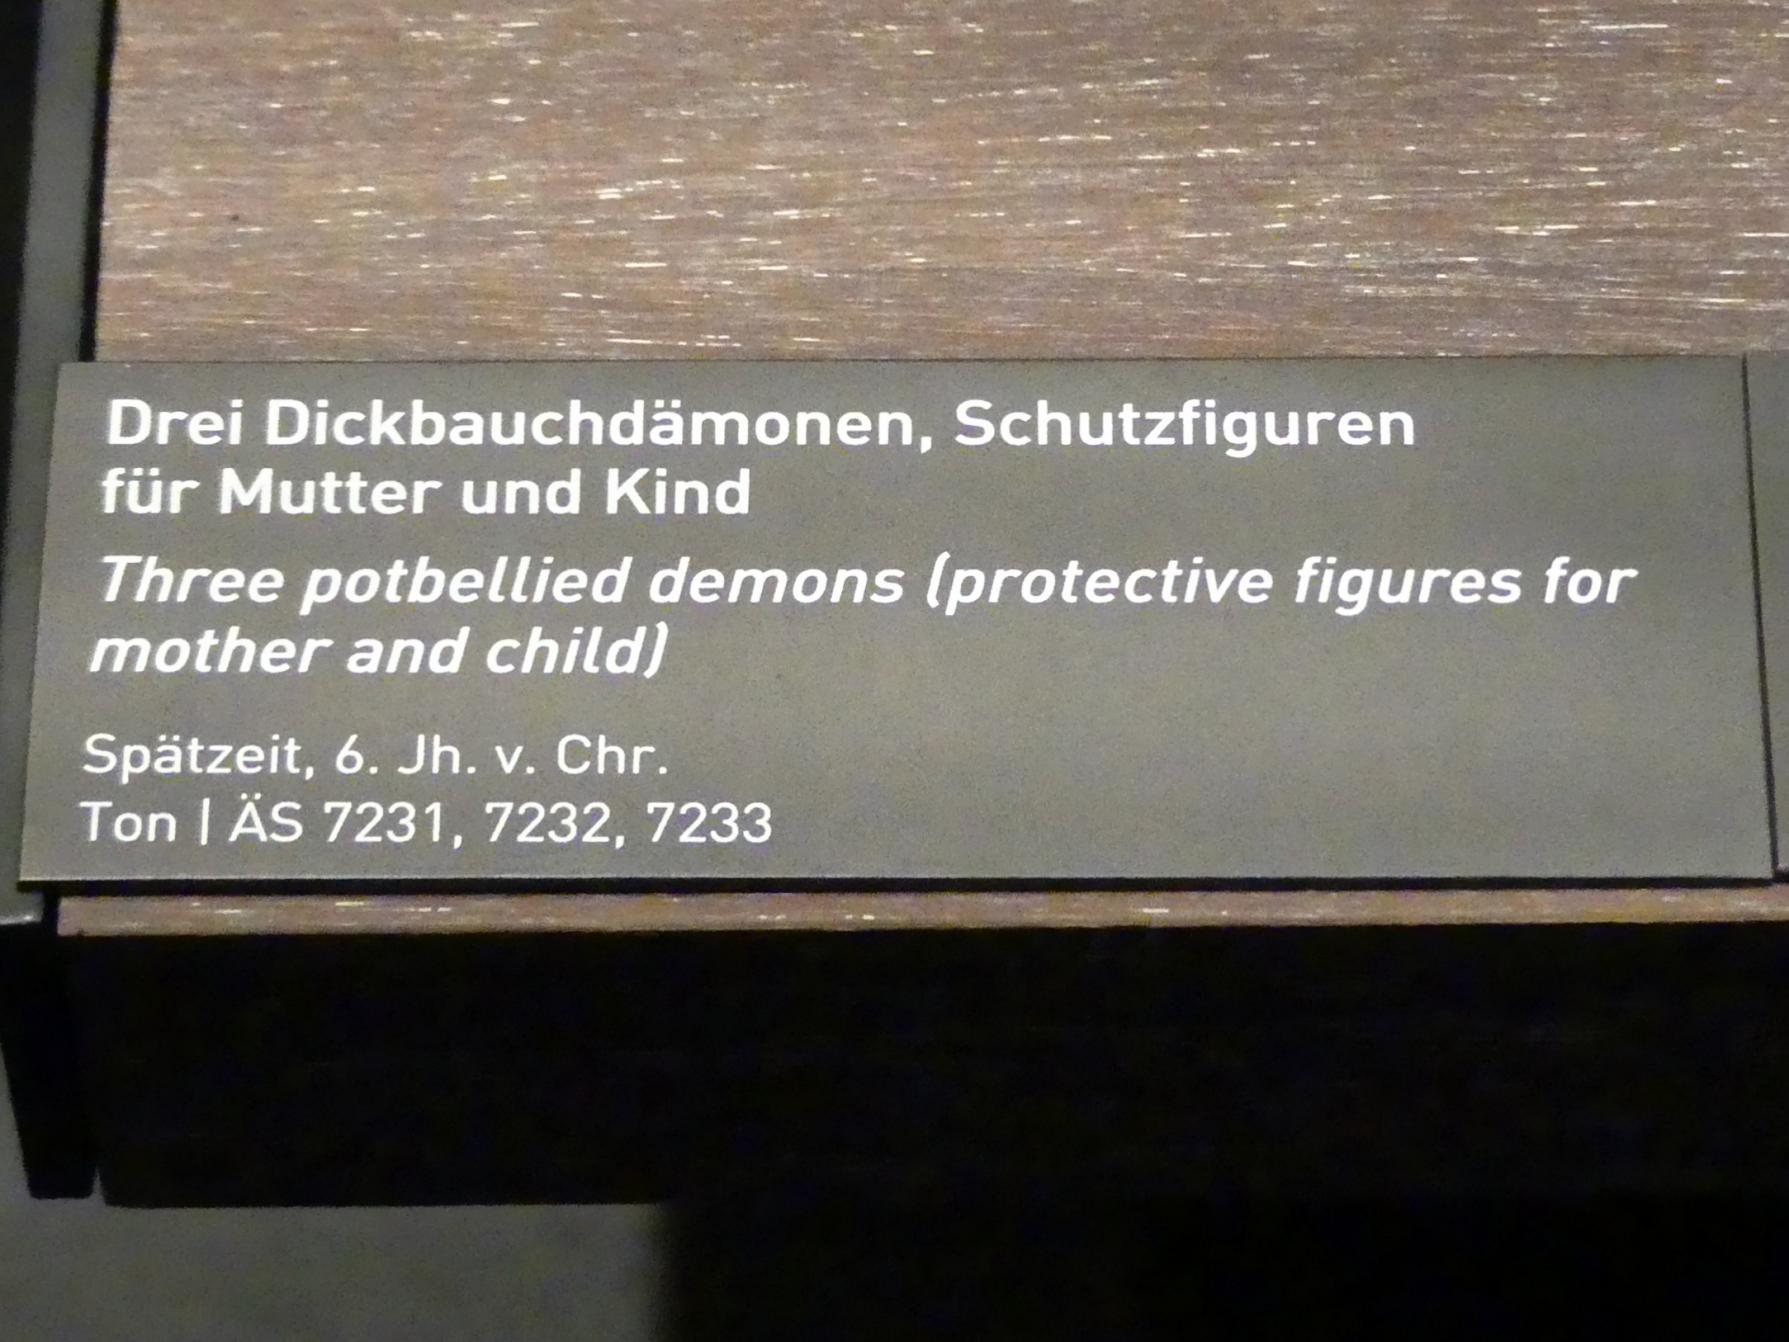 Drei Dickbauchdämonen, Schutzfiguren für Mutter und Kind, Spätzeit, 360 - 342 v. Chr., 600 - 500 v. Chr., Bild 2/2